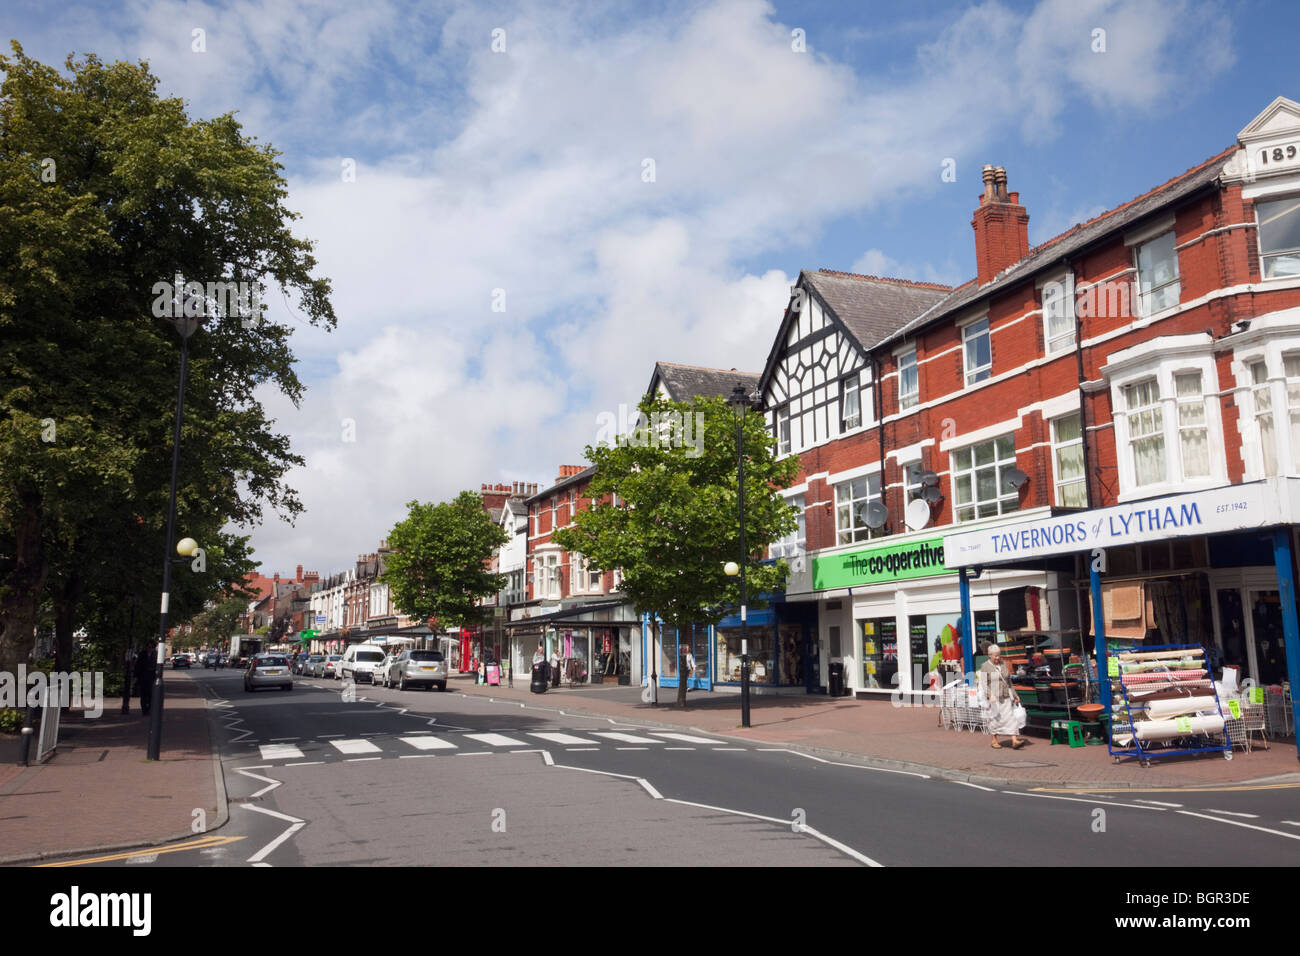 Clifton Street, Lytham St Annes, Lancashire, Angleterre, Royaume-Uni, Europe. Petits commerces sur la rue principale Banque D'Images